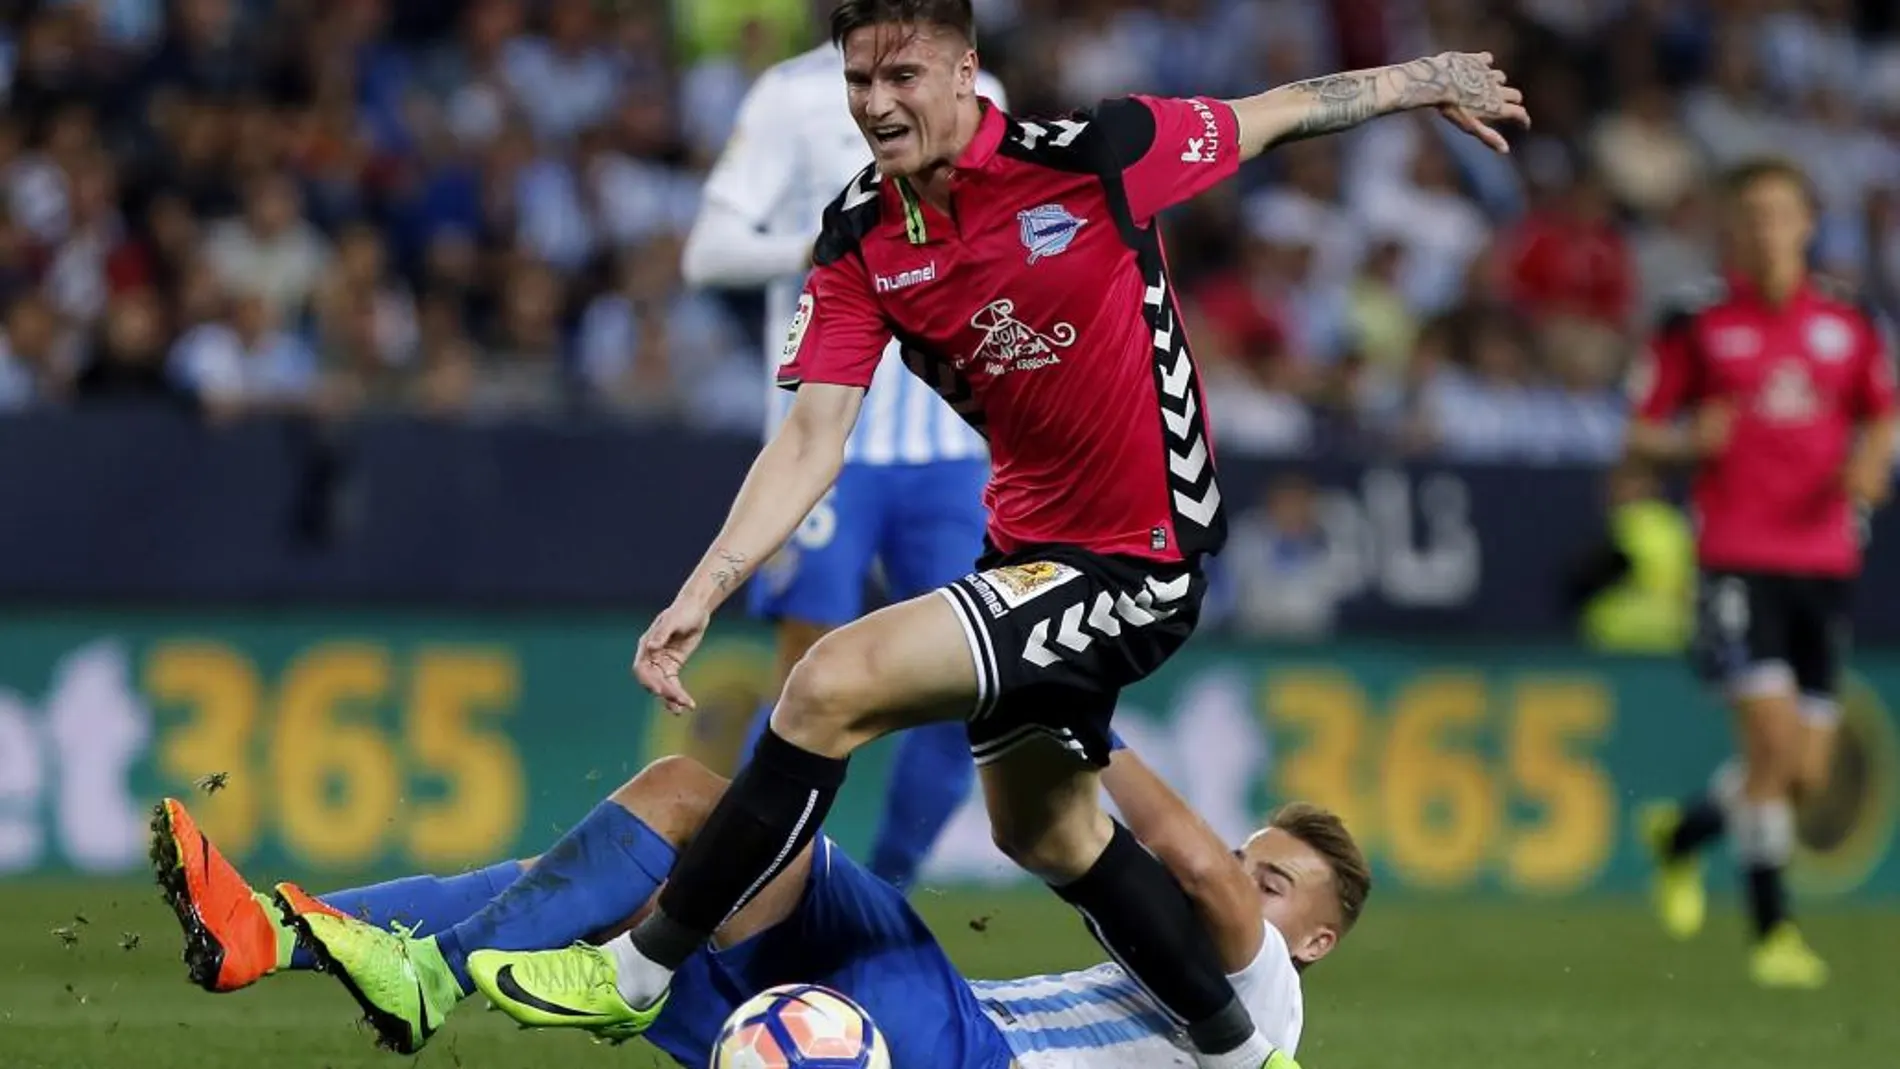 El defensa del Alavés, Carlos Vigaray, se lleva el balón ante el centrocampista del Málaga, Javi Ontiveros